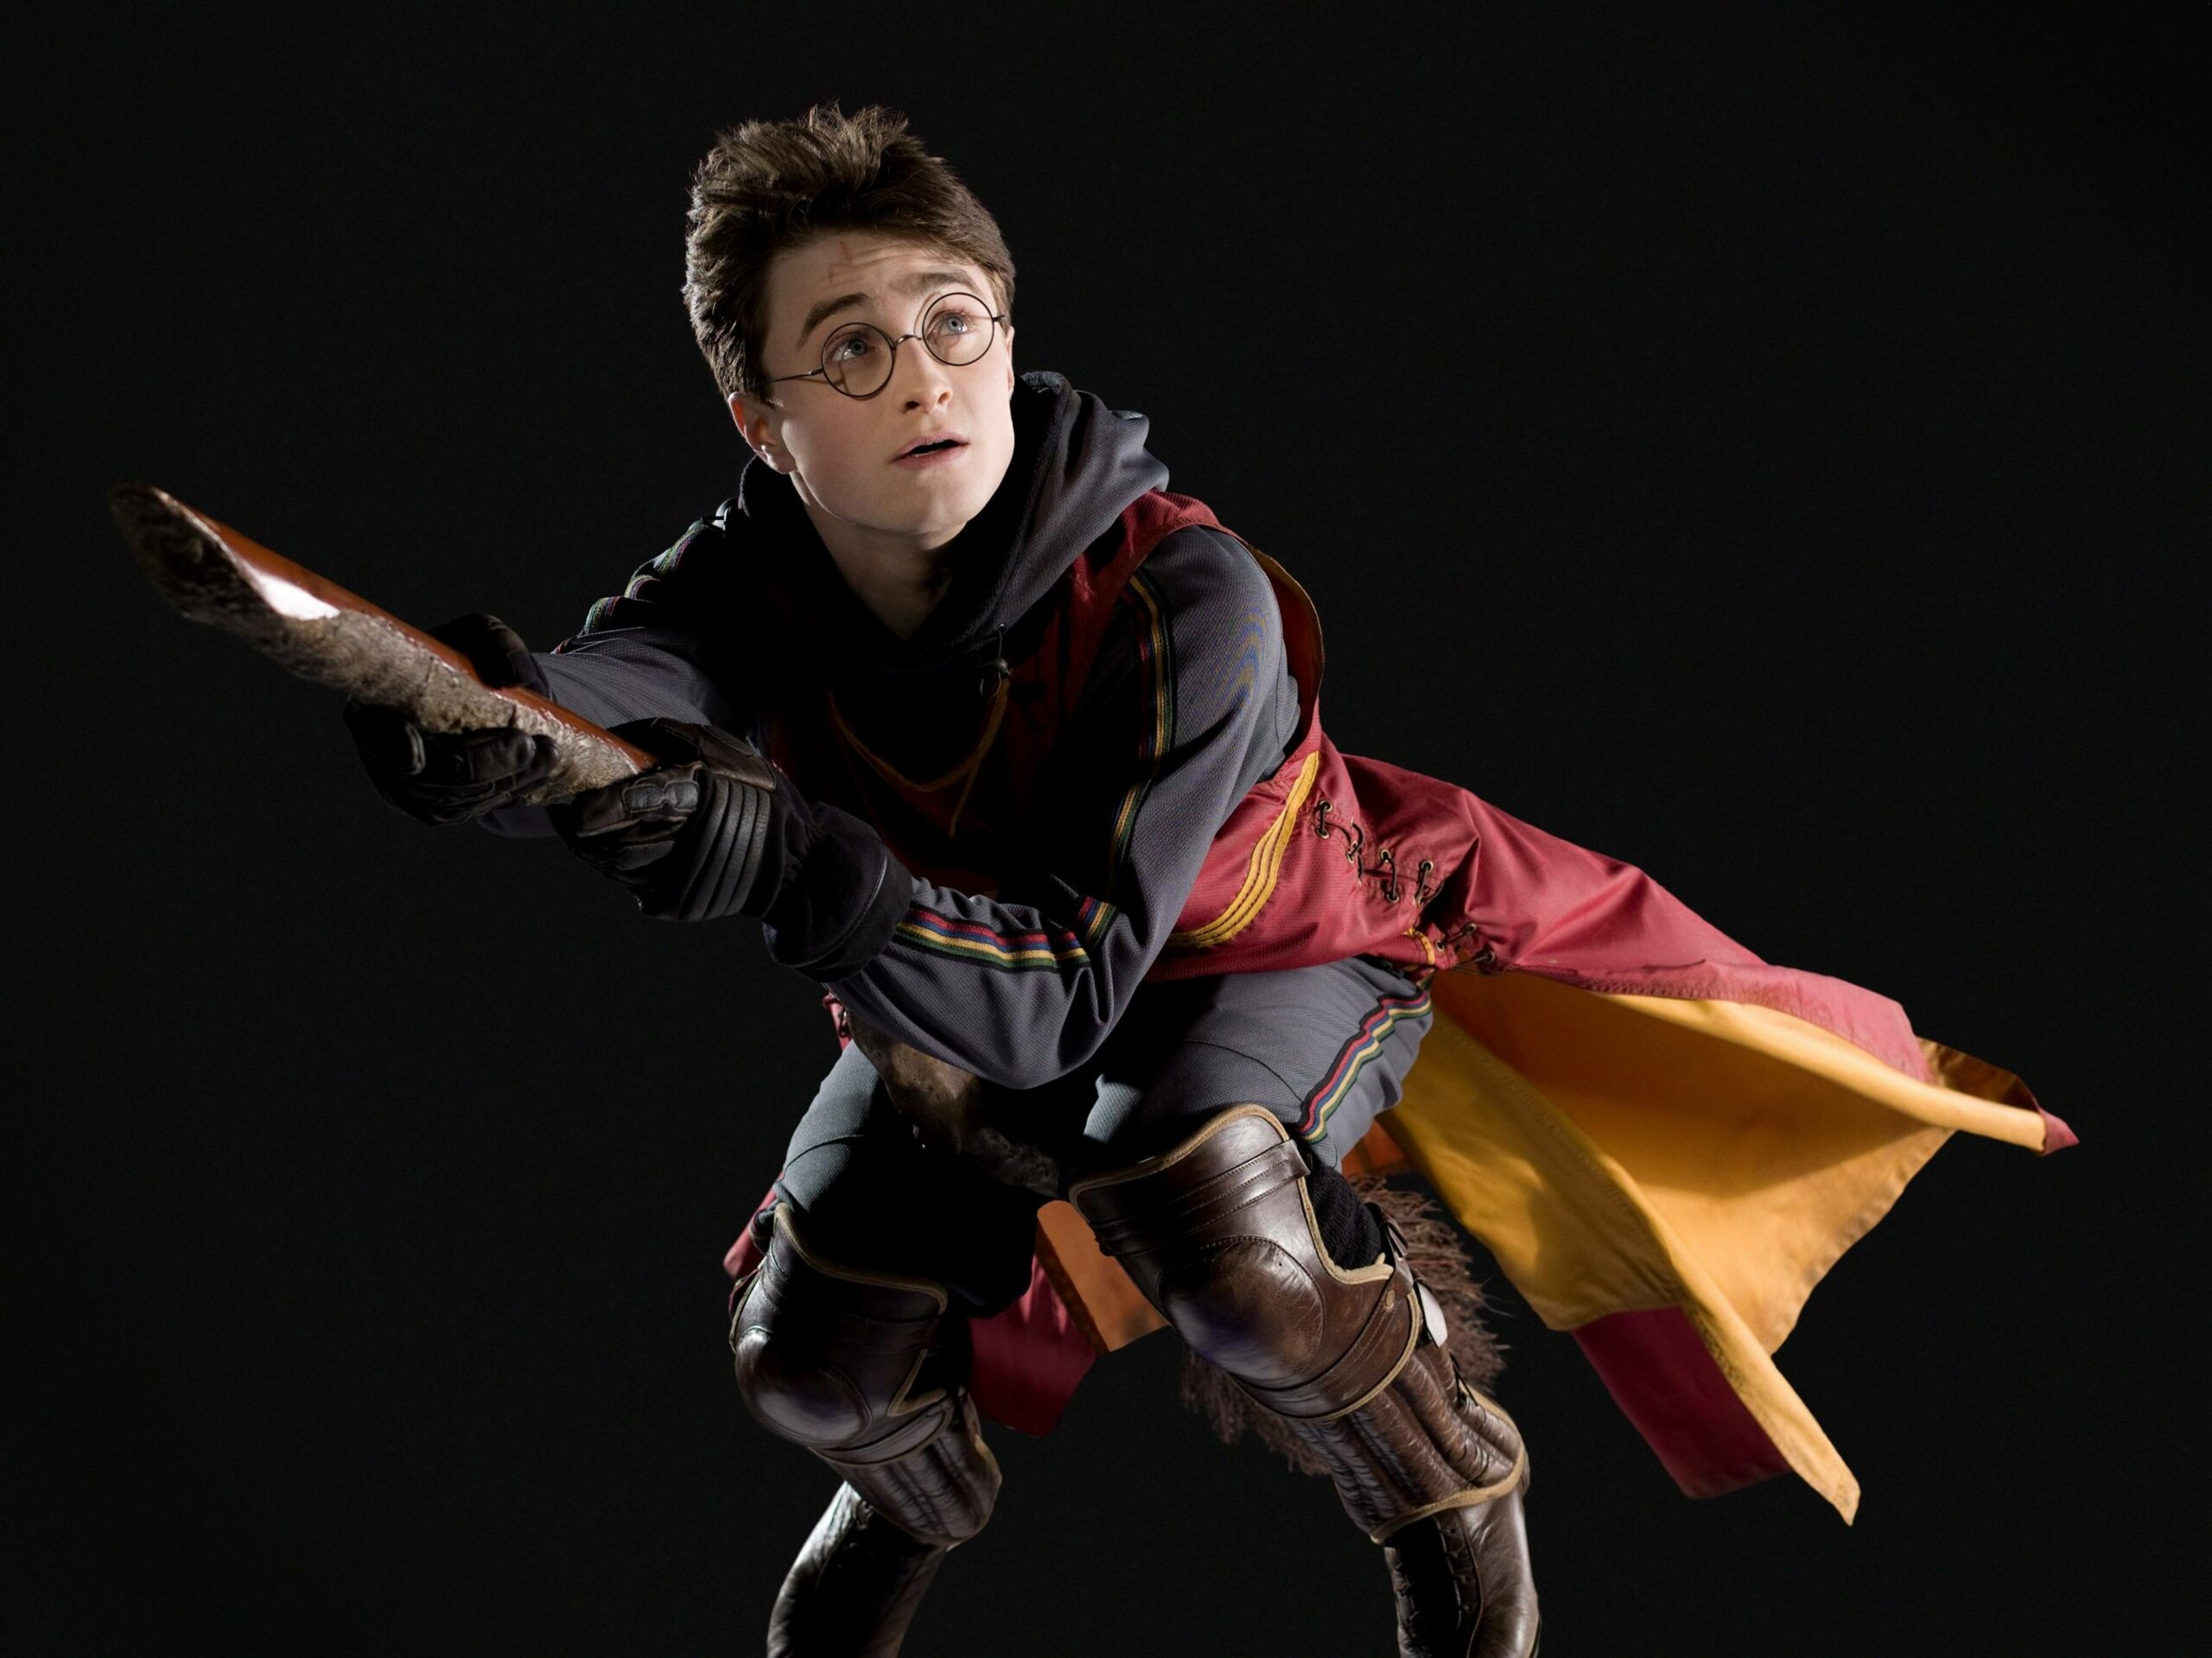 Daniel Radcliffe als Harry Potter in „Harry Potter und der Halbblutprinz“ von 2009.